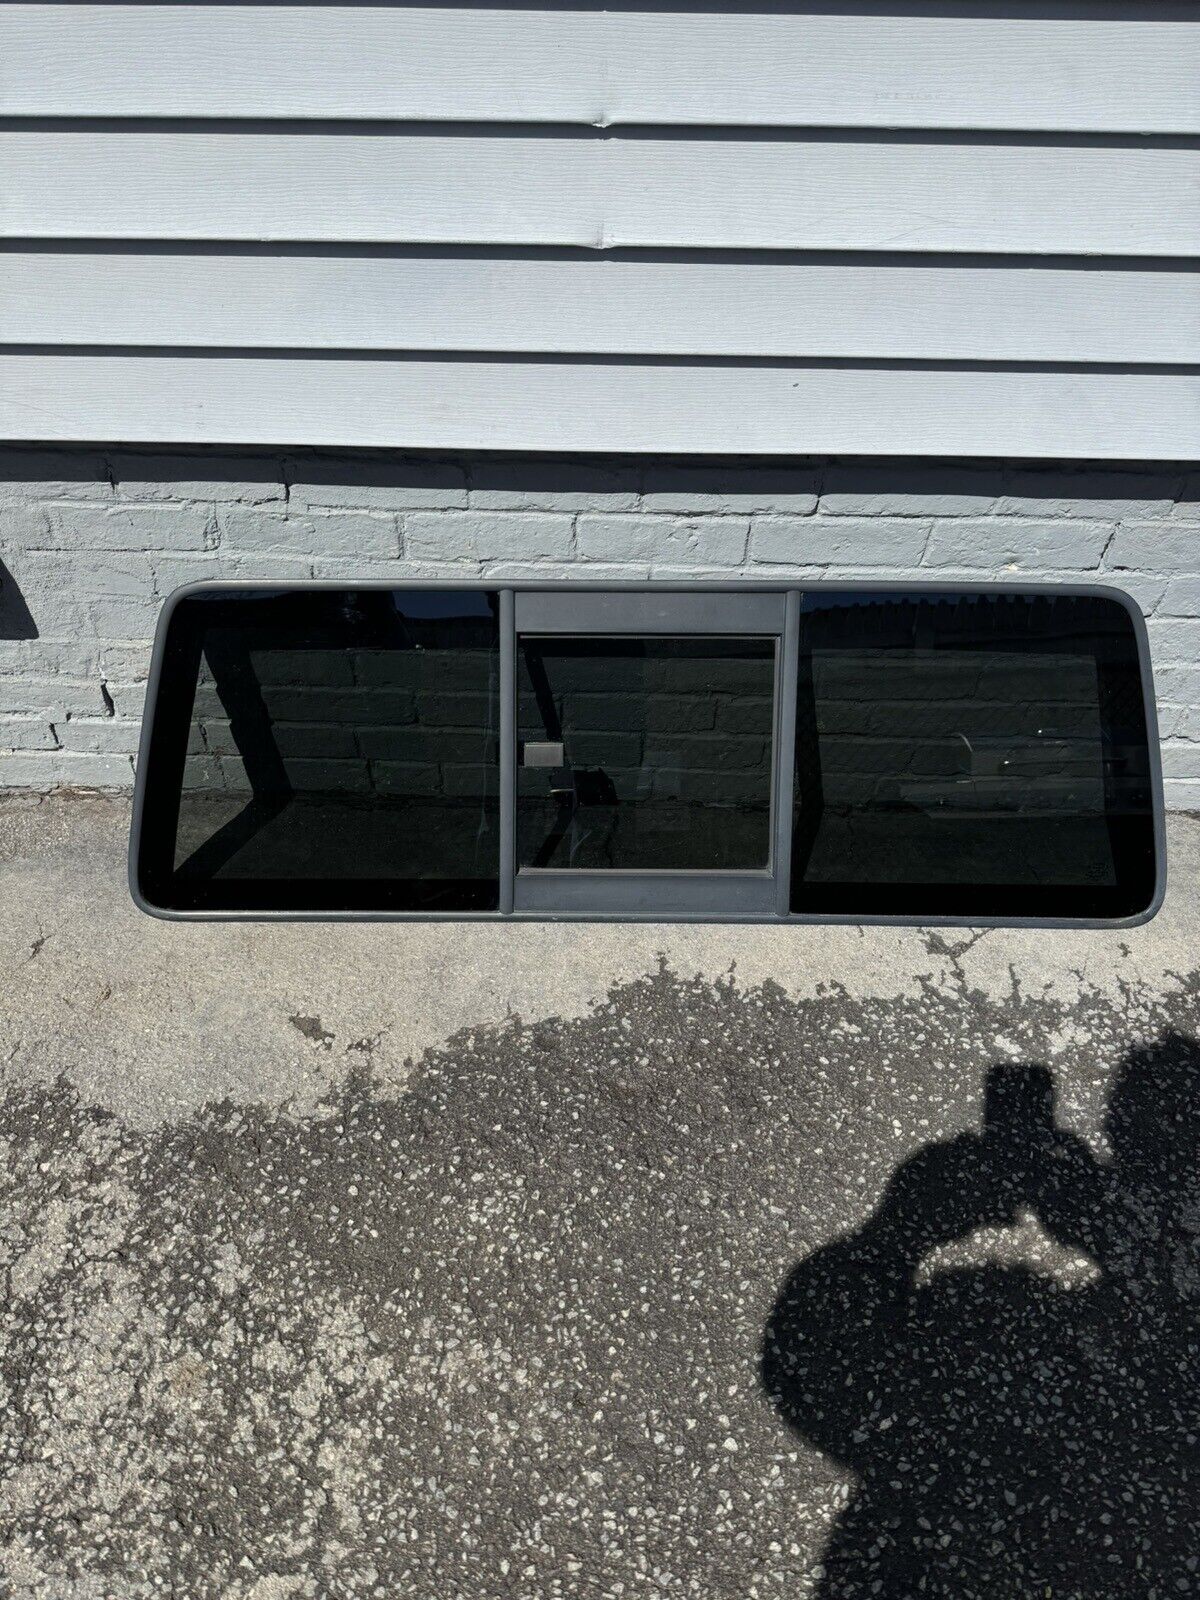 1998-2011 Ford Ranger 2005-2010 Mazda B Truck Sliding Back Rear Window Glass OEM